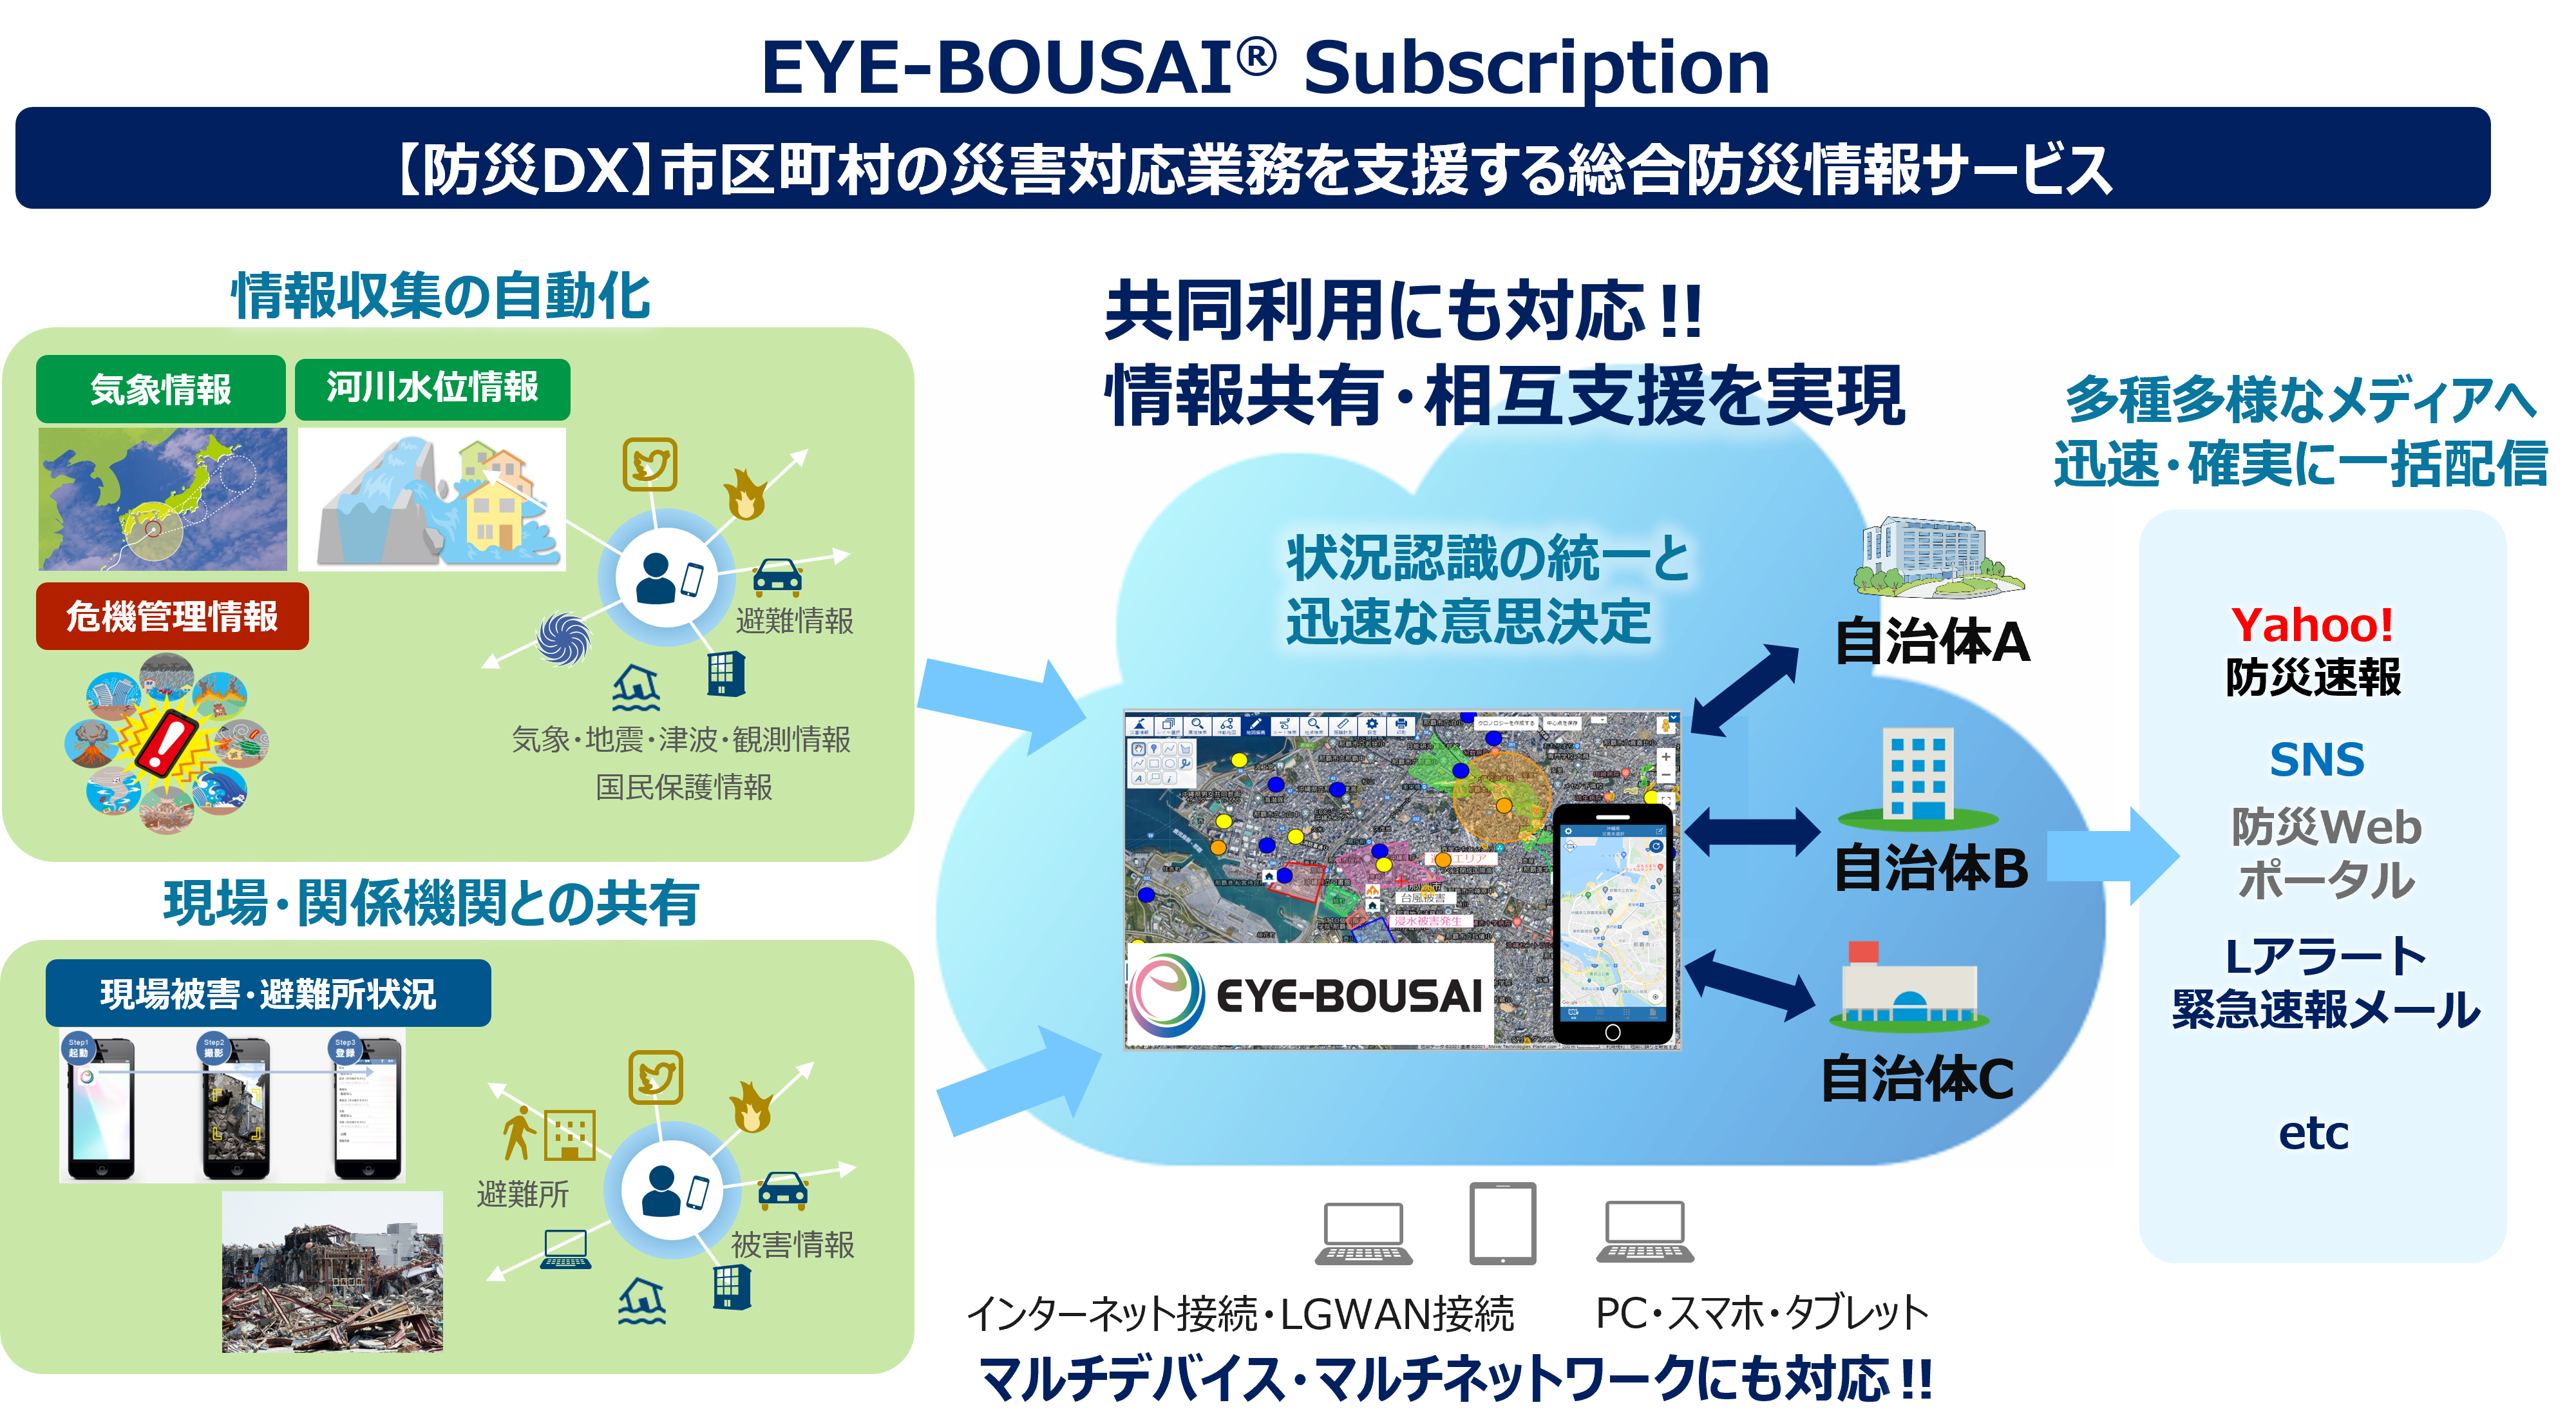 総合防災情報システム「EYE-BOUSAI Subscription」サービスの流れ